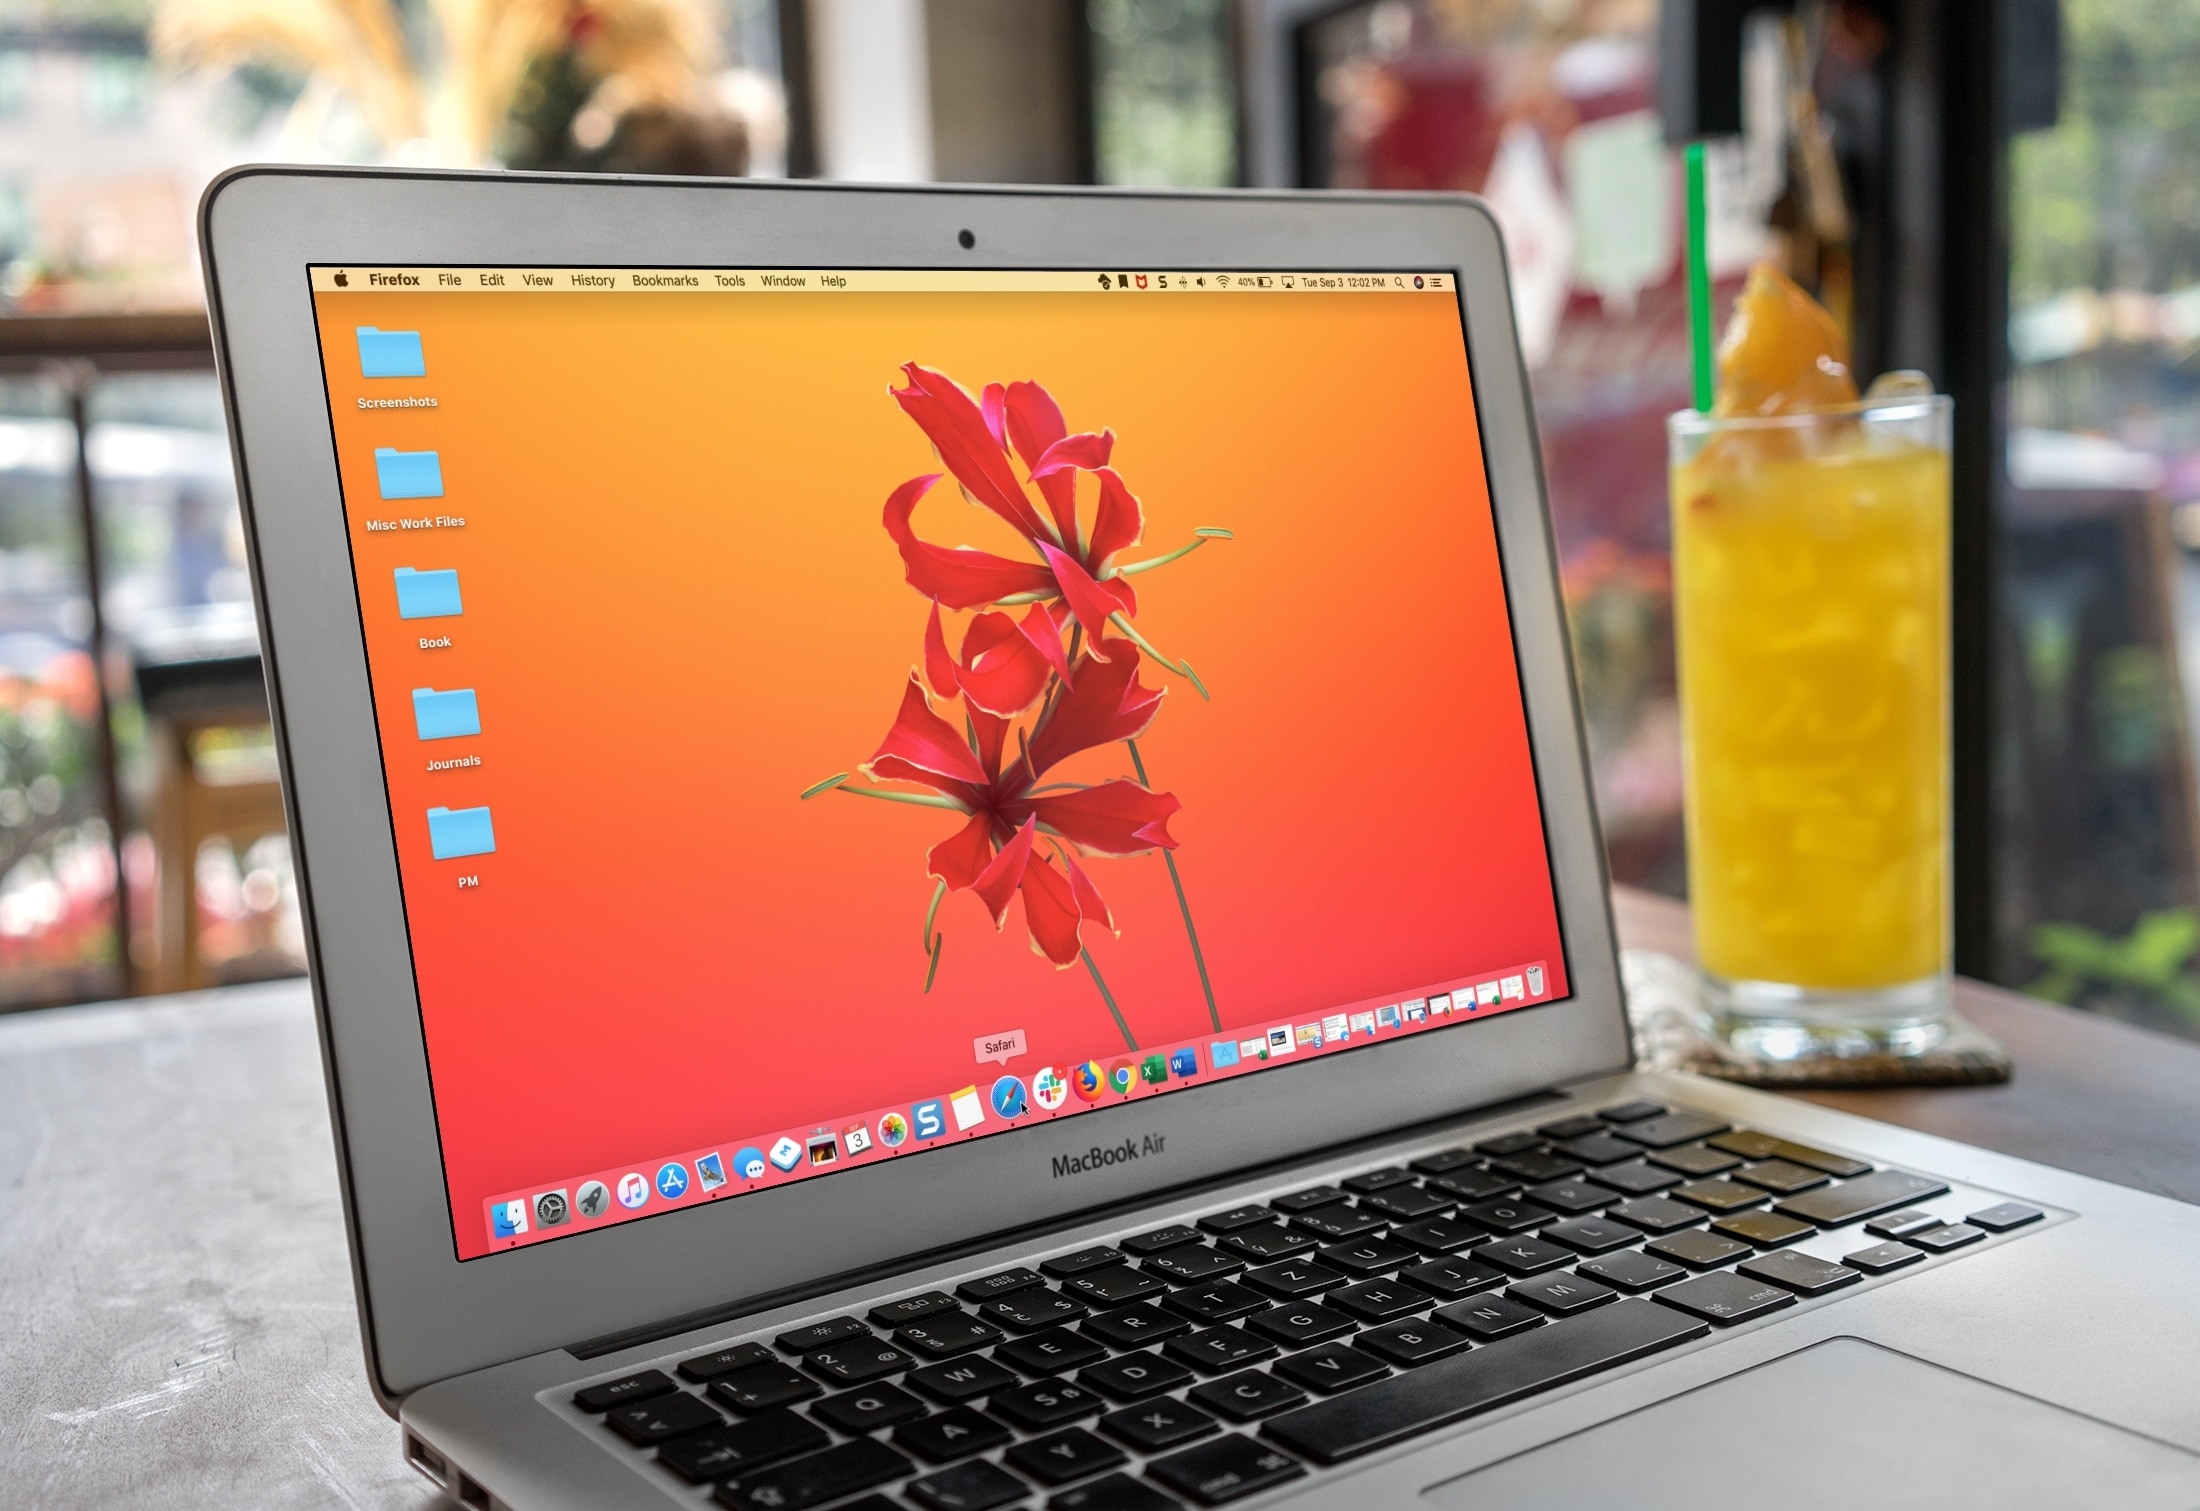 Macbook Work with Mac Dock